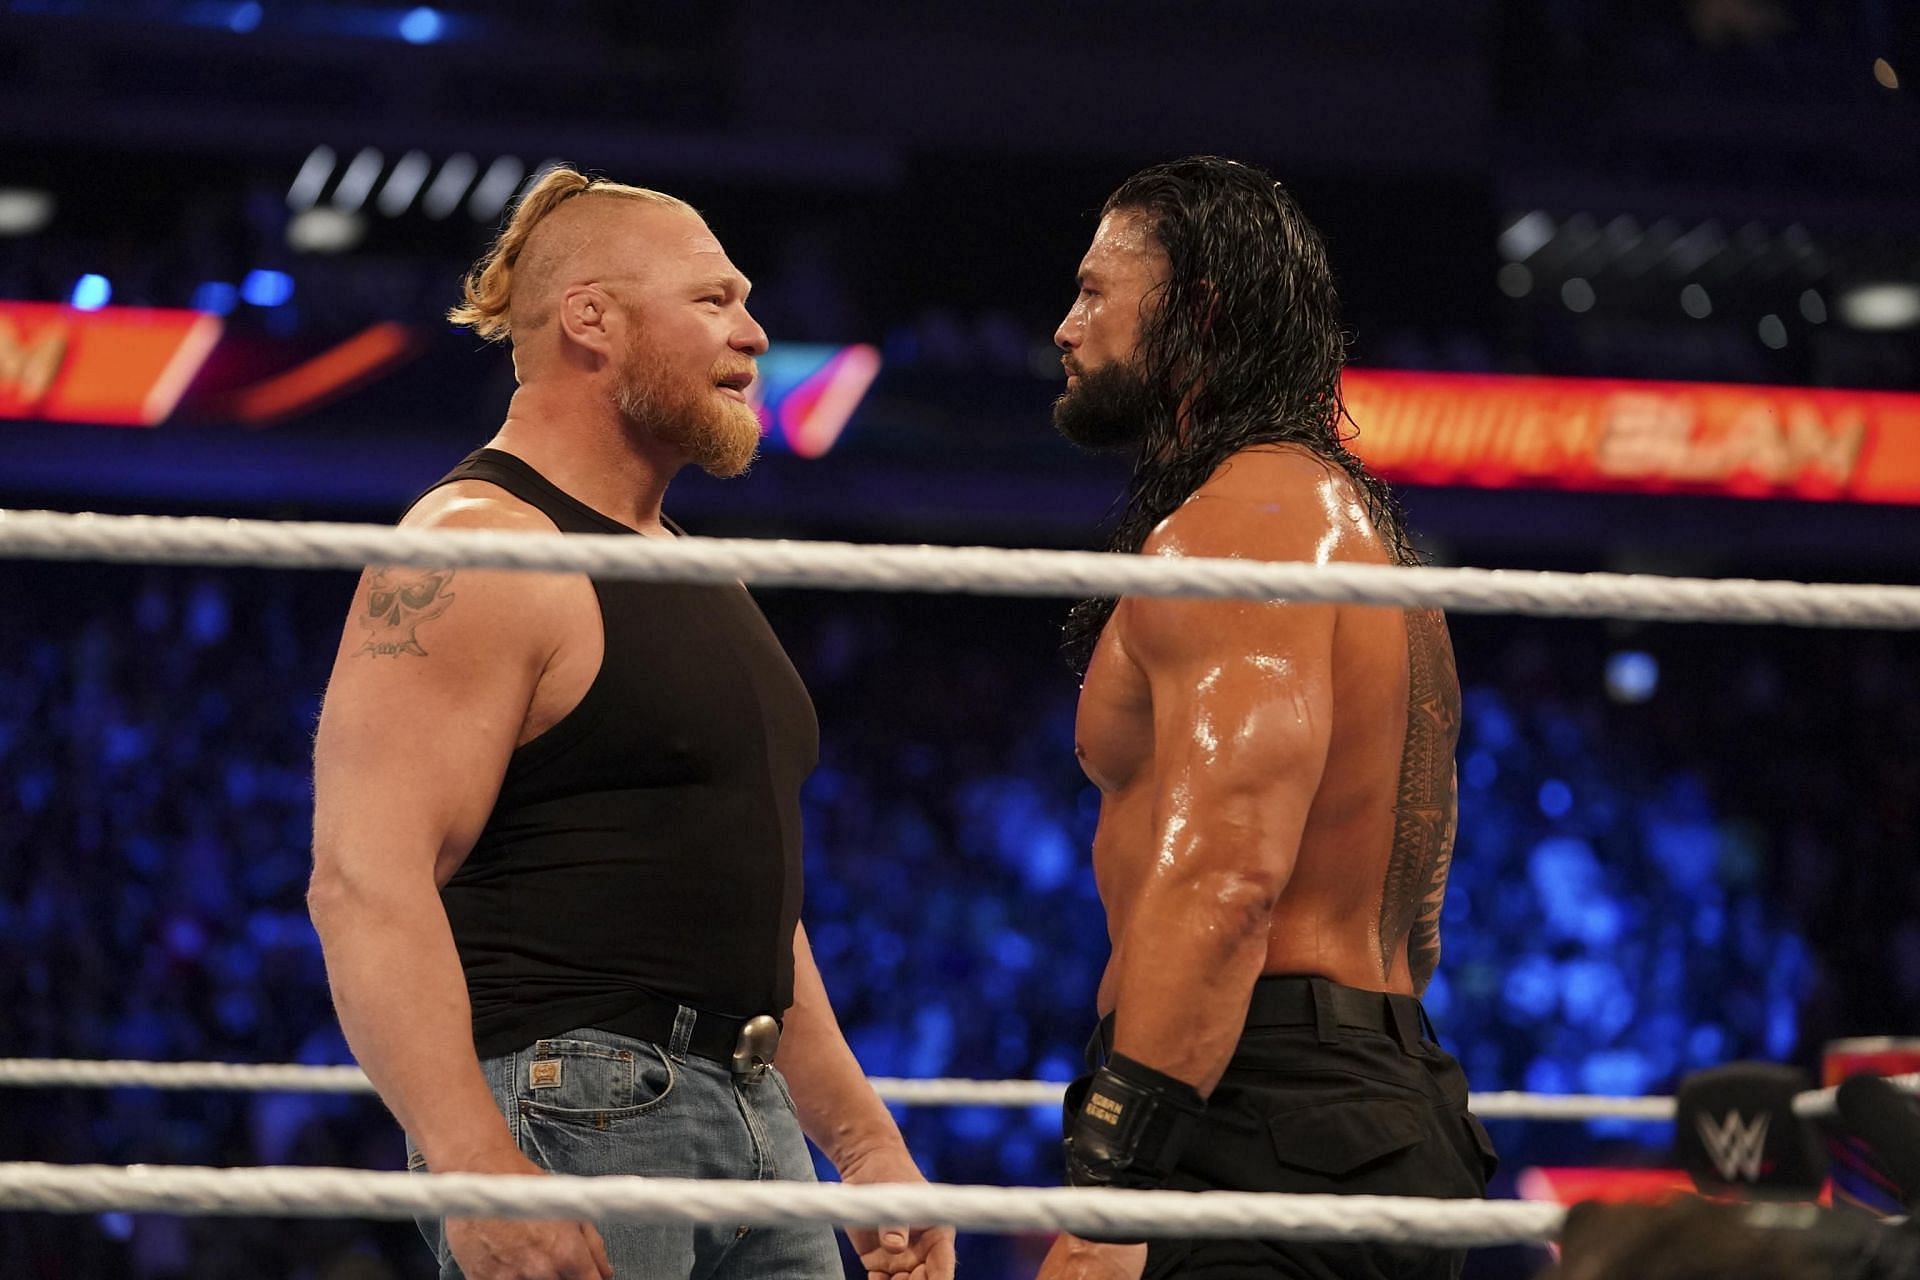 WWE Day 1 2022 में रोमन रेंस vs ब्रॉक लैसनर मैच में किसकी जीत होनी चाहिए?